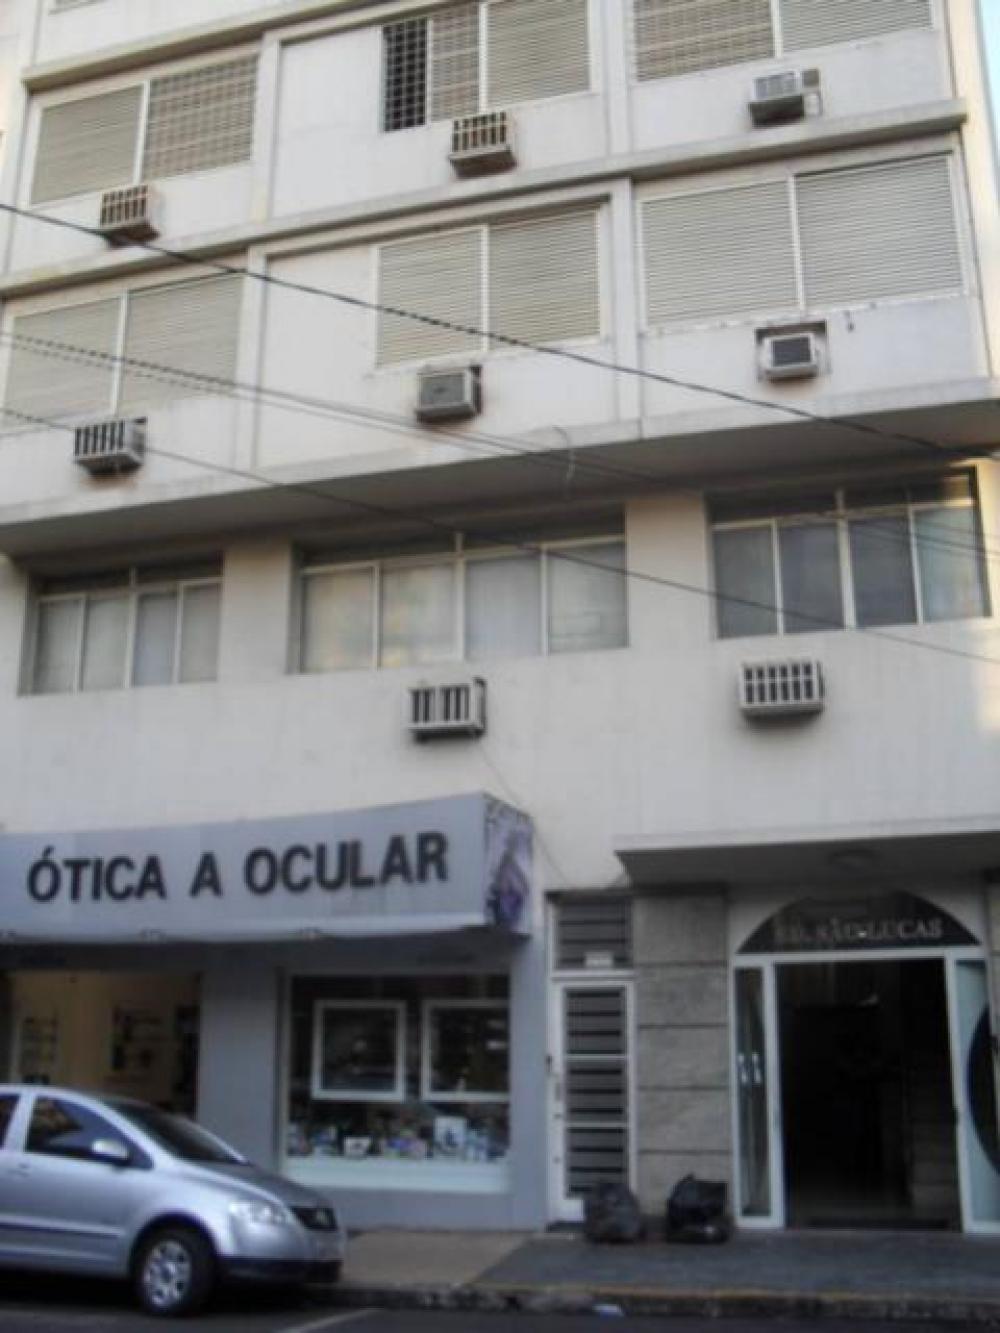 Comprar Apartamento / Padrão em São José do Rio Preto apenas R$ 270.000,00 - Foto 12